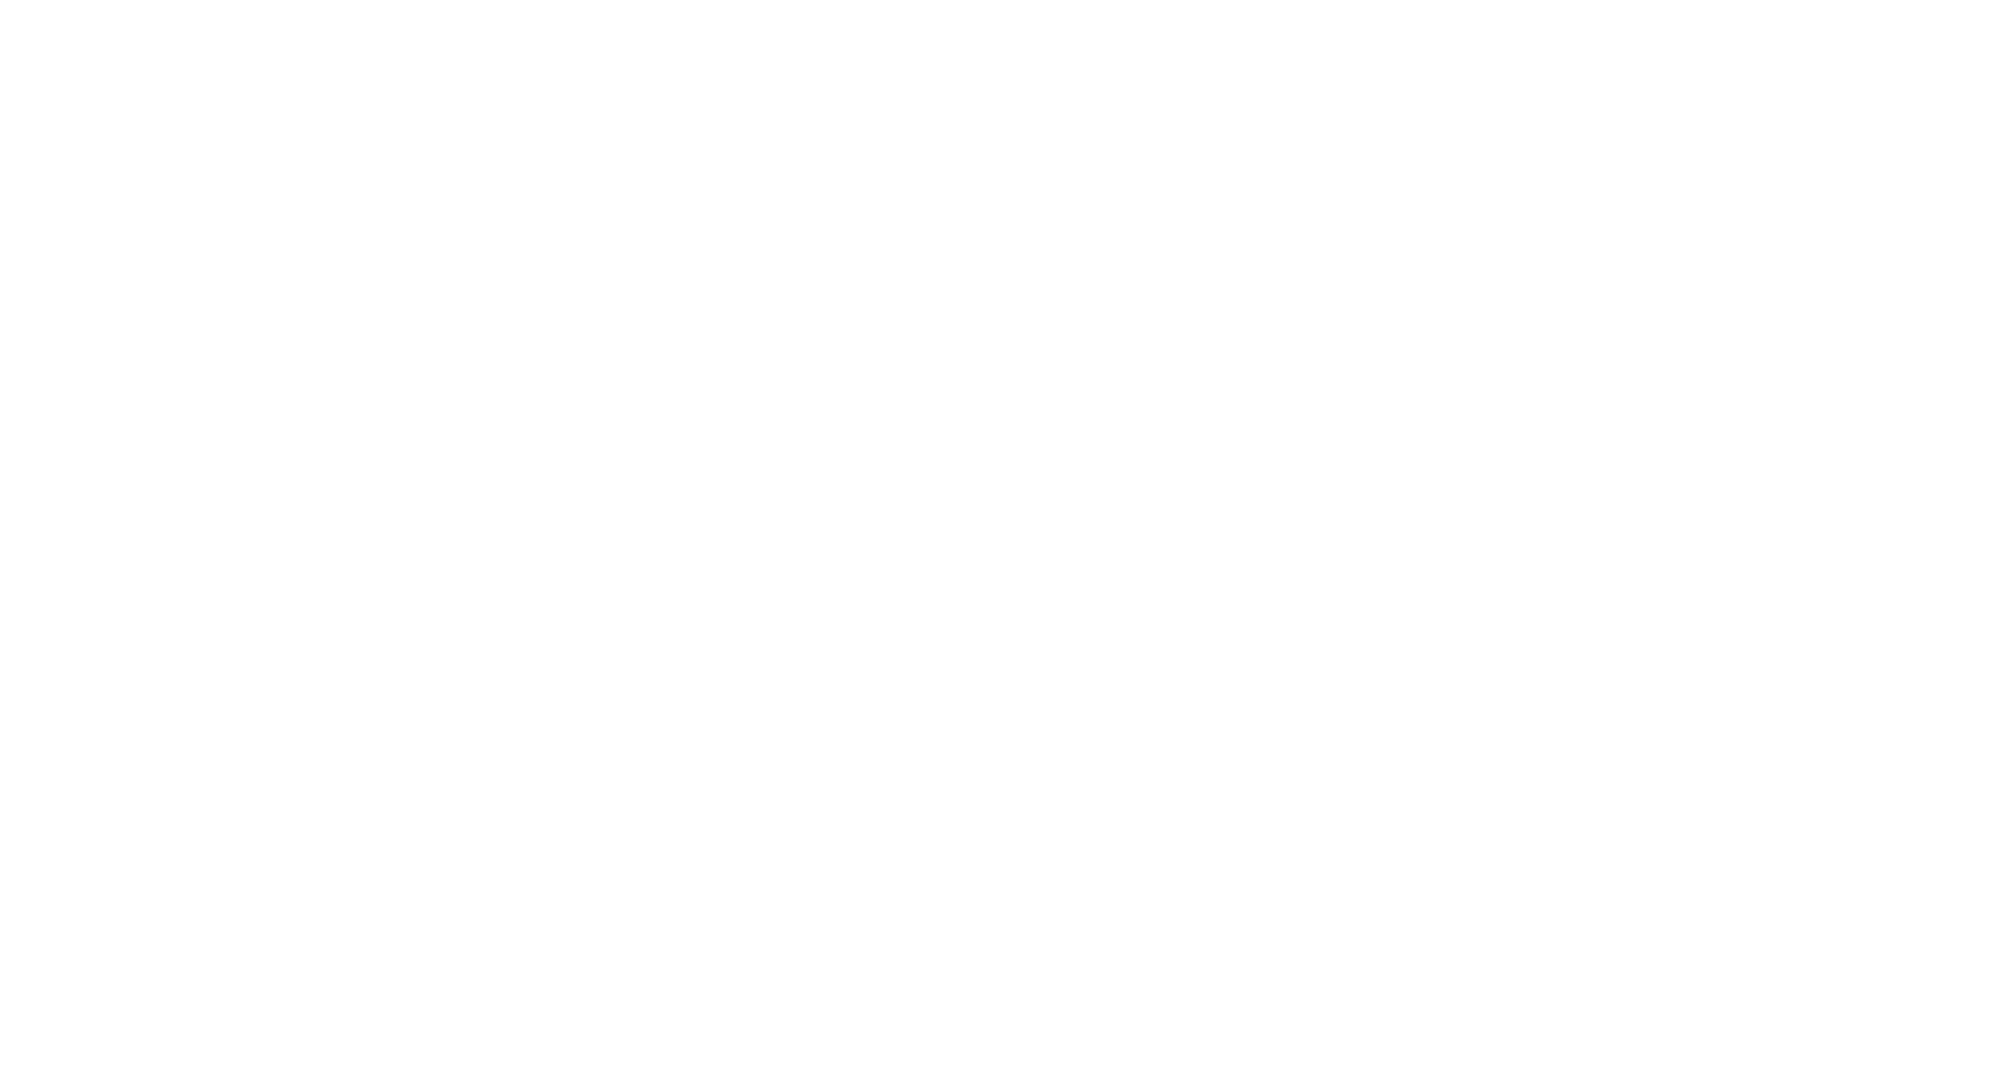 Insure & Escape